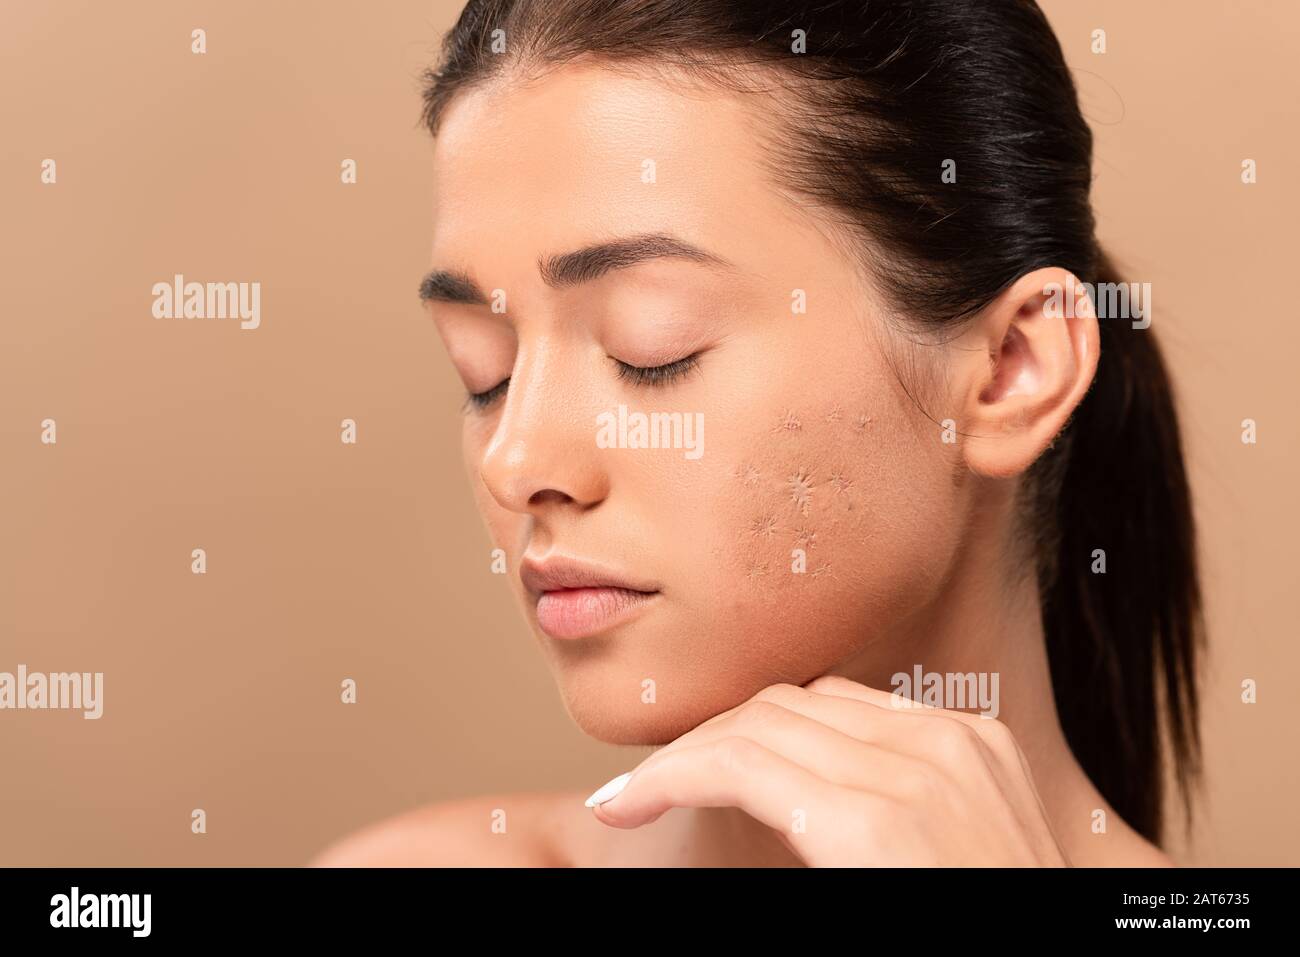 Primo piano del naso di una donna con punti neri o punti neri problemi di  acne comedoni pori dilatati